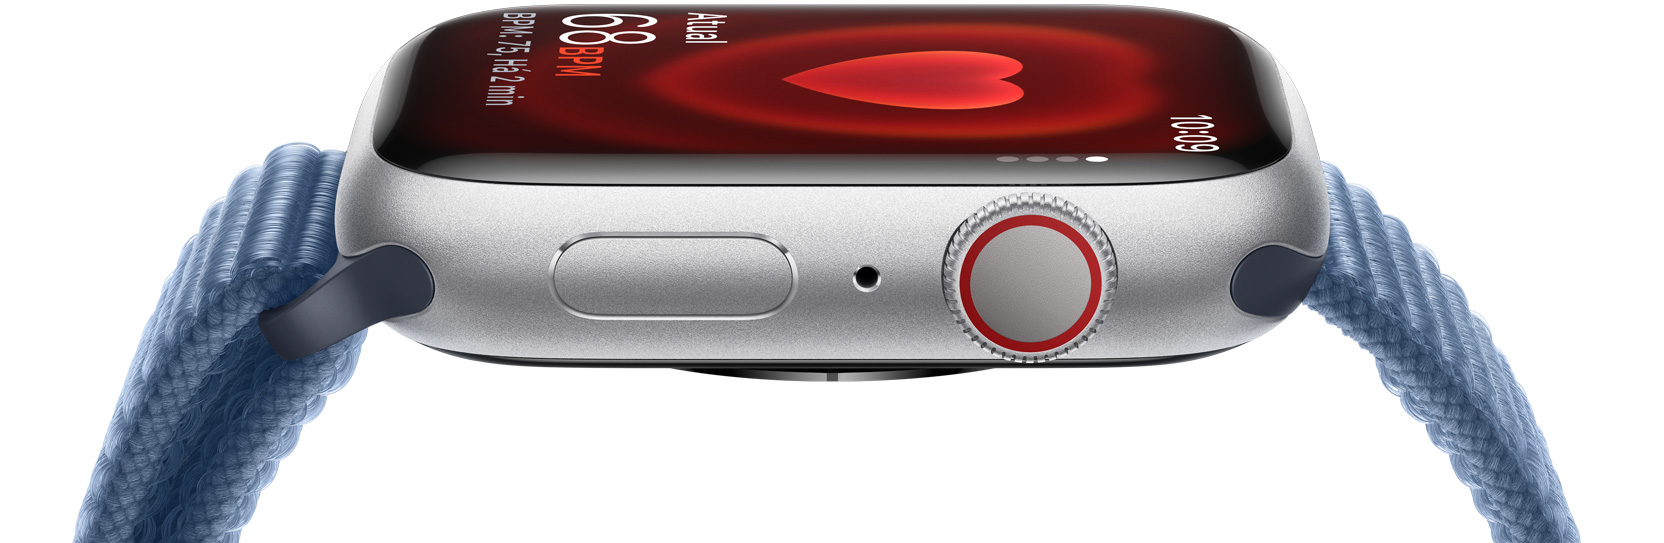 Imagem lateral de um Apple Watch mostrando uma frequência cardíaca.